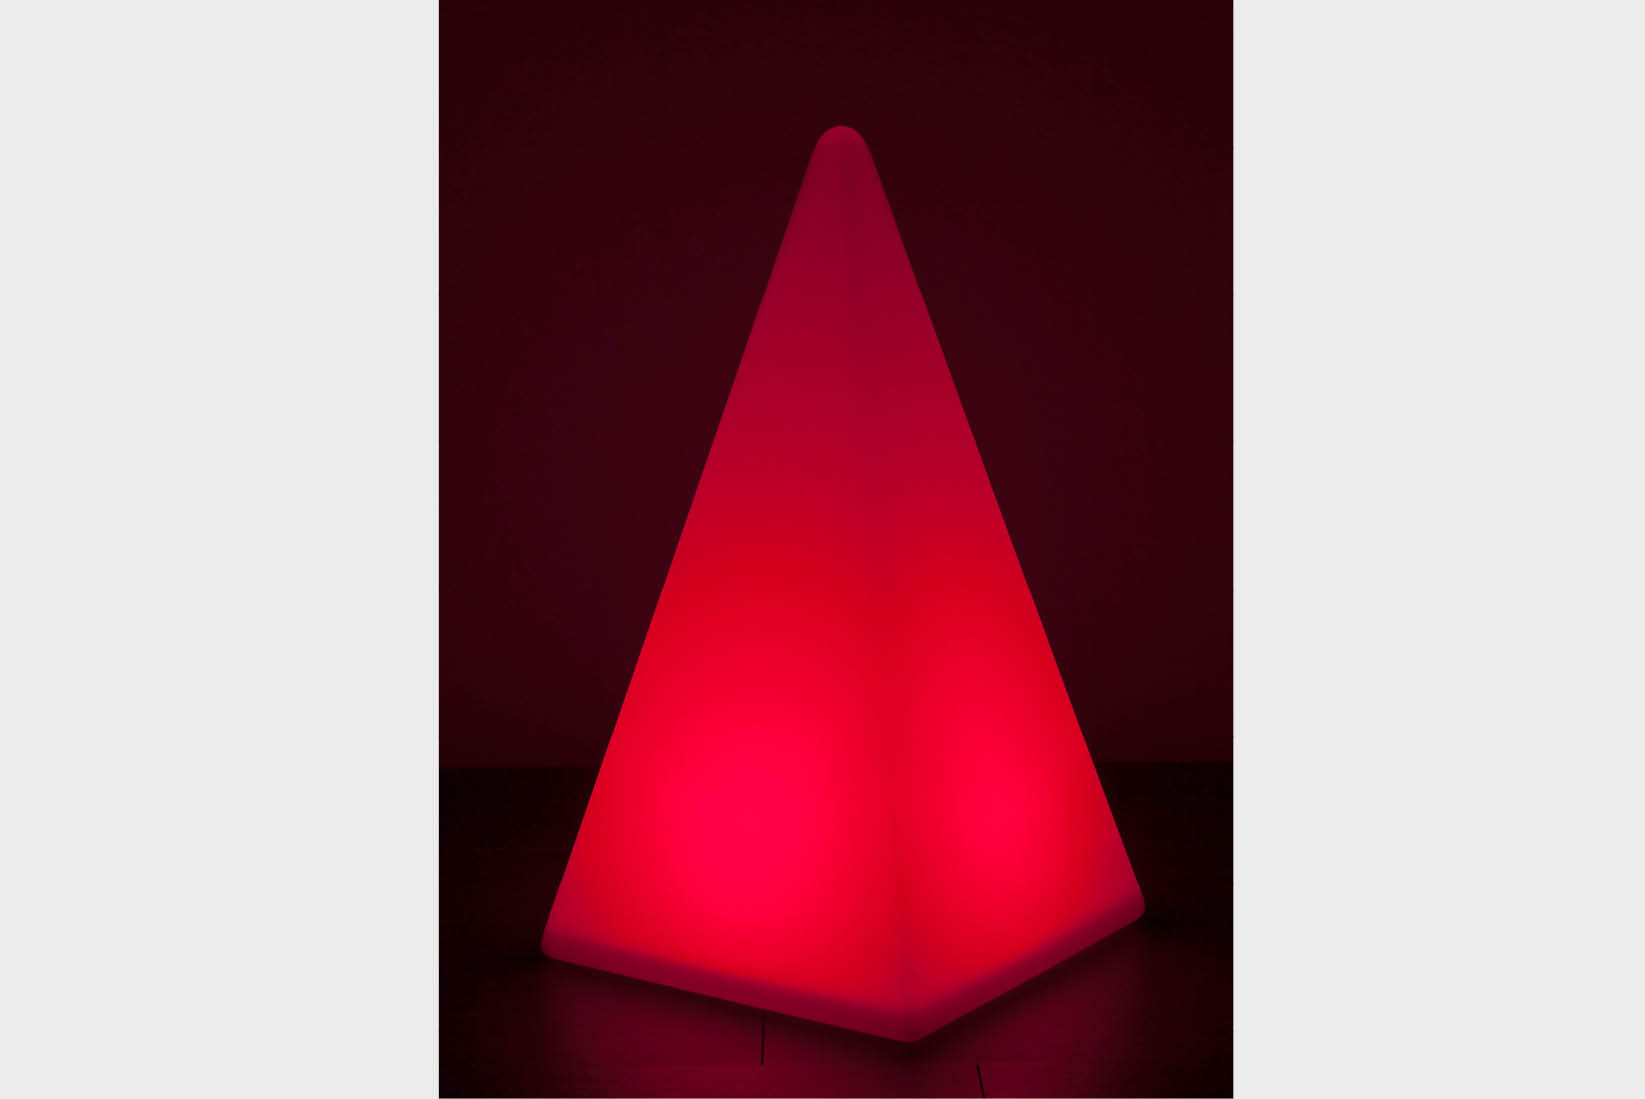 Akkuleuchte Pyramide RGB von EPSTEIN Design Leuchten